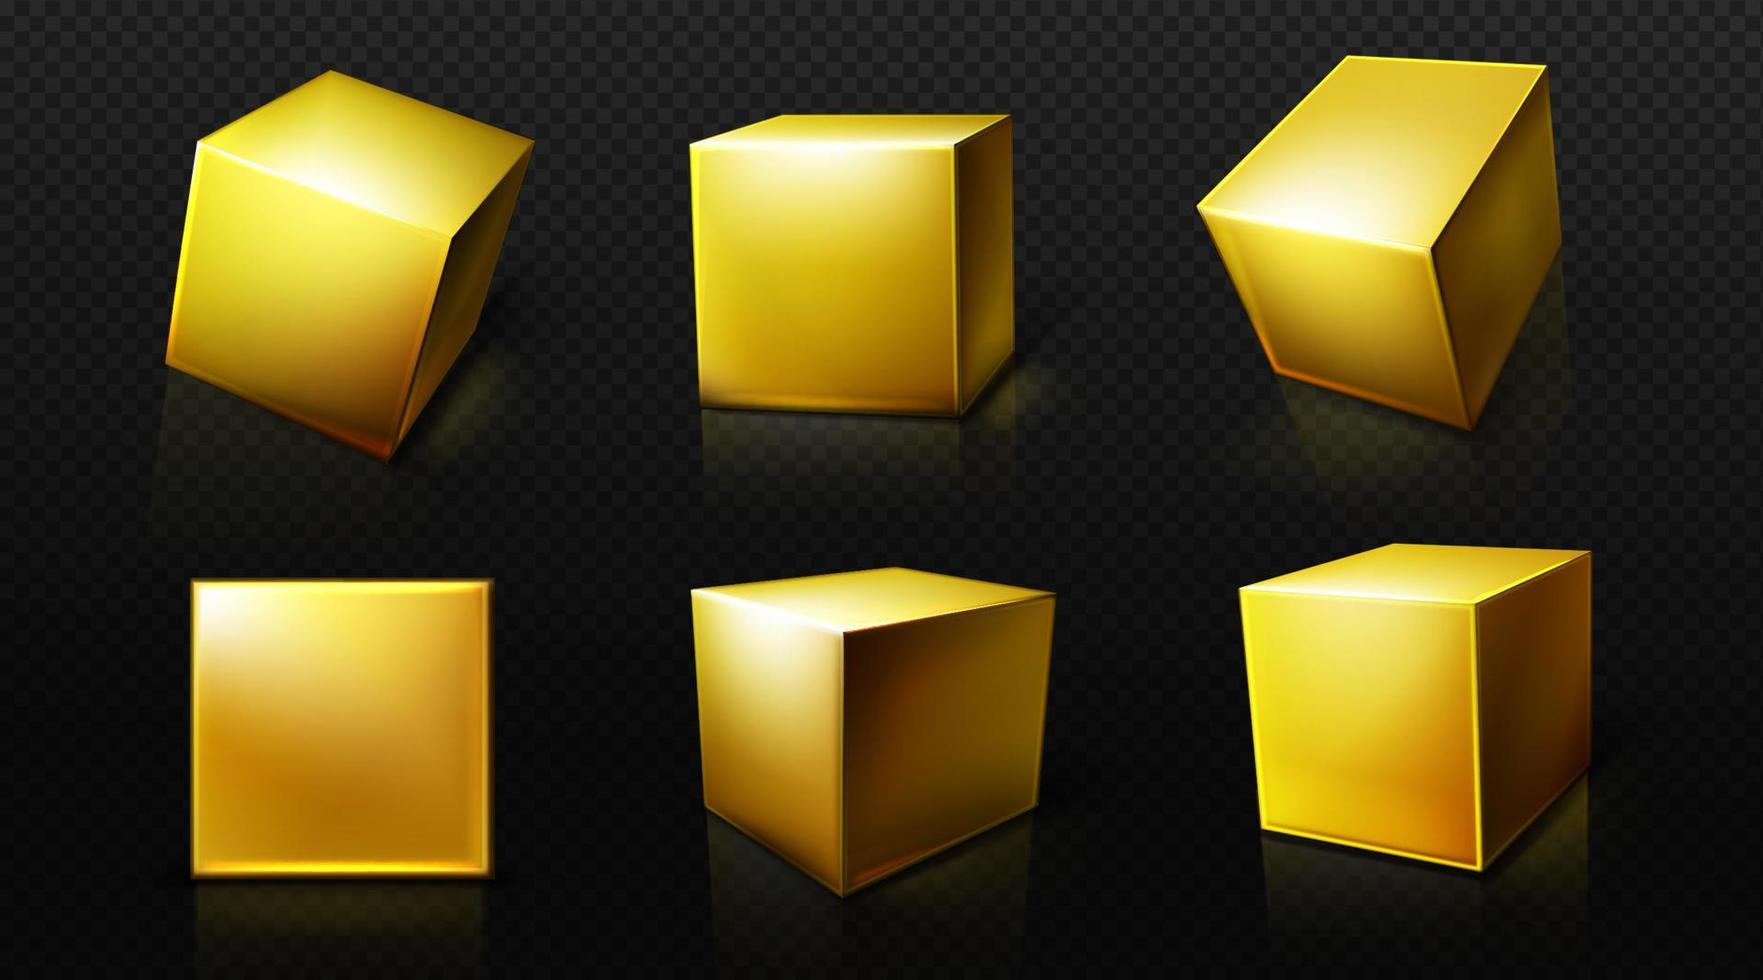 cubo de ouro, caixa dourada quadrada 3d, blocos cúbicos vetor